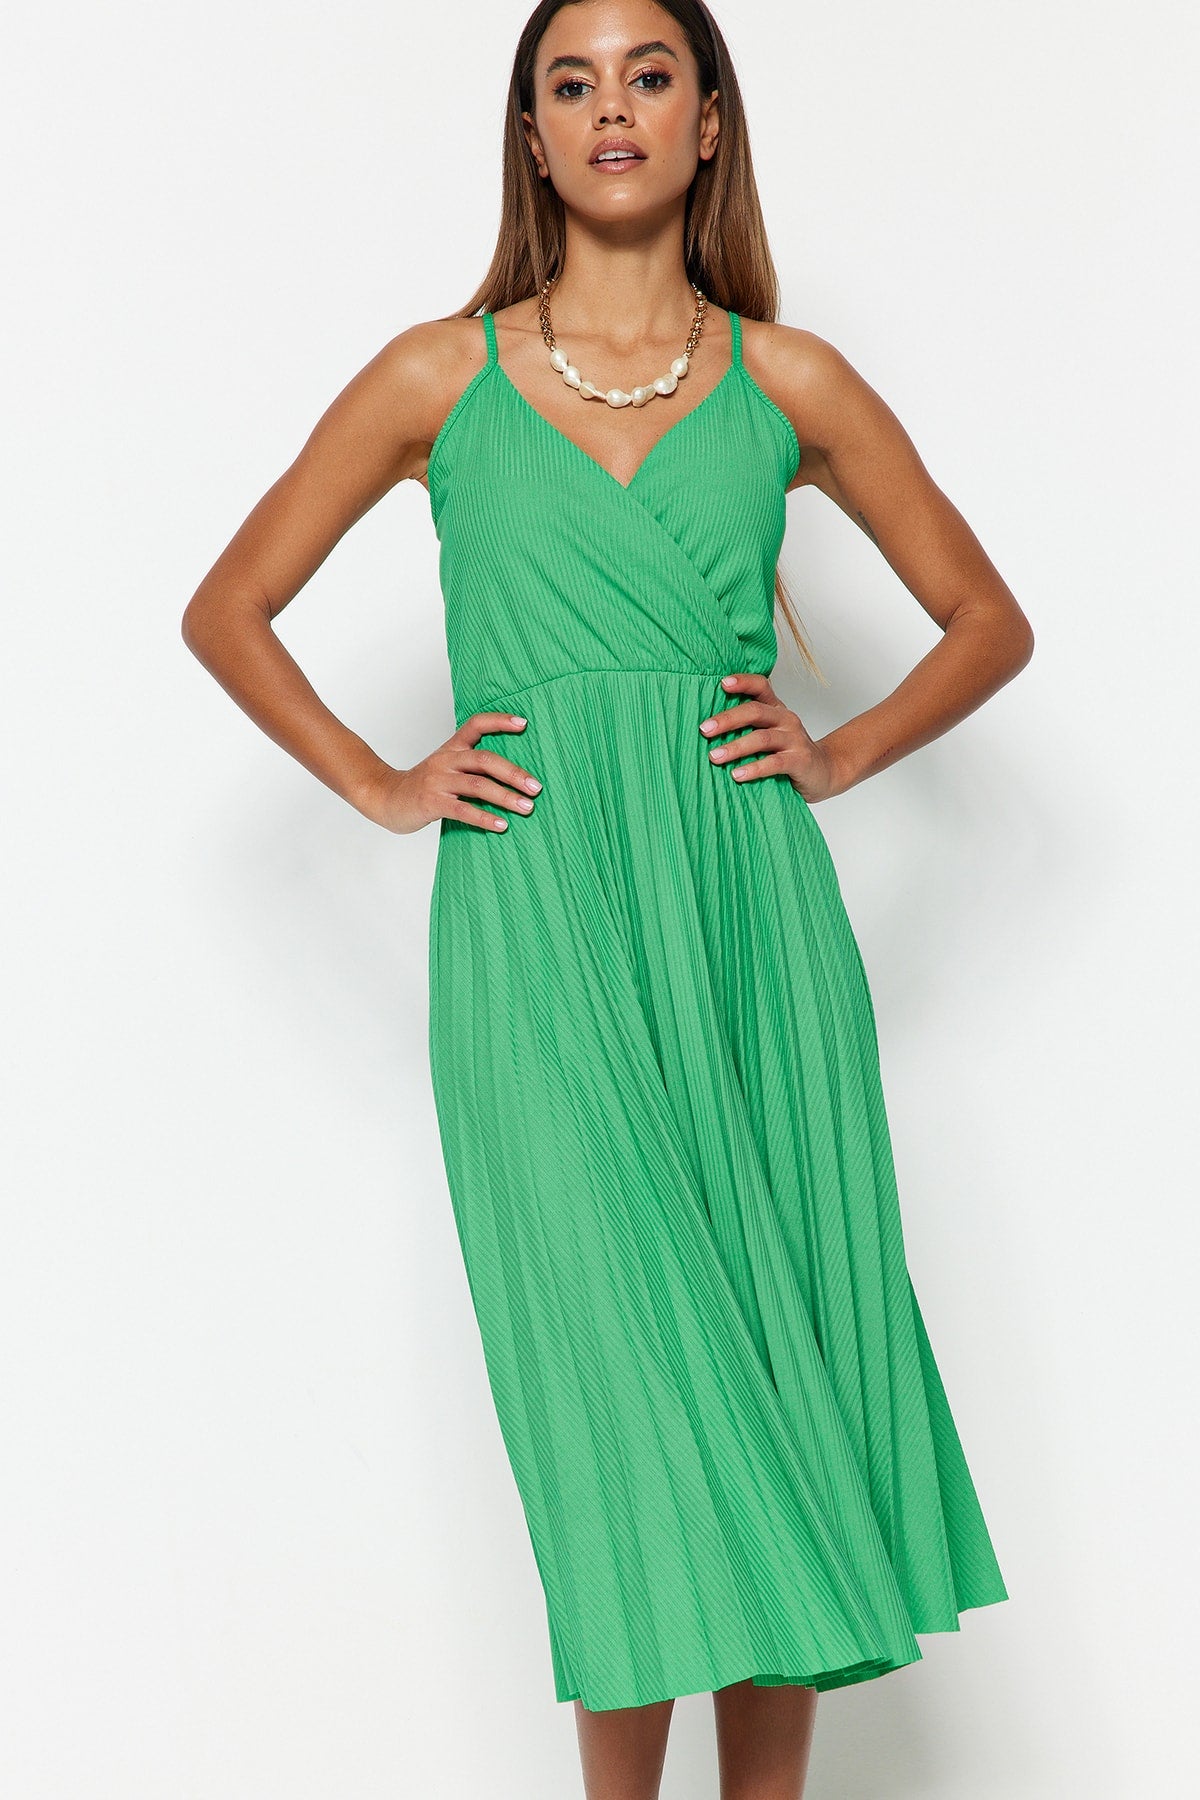 Grünes Midi-Kleid mit offener Taille/Skater, zweireihig, plissiert, dehnbar, Strickkleid